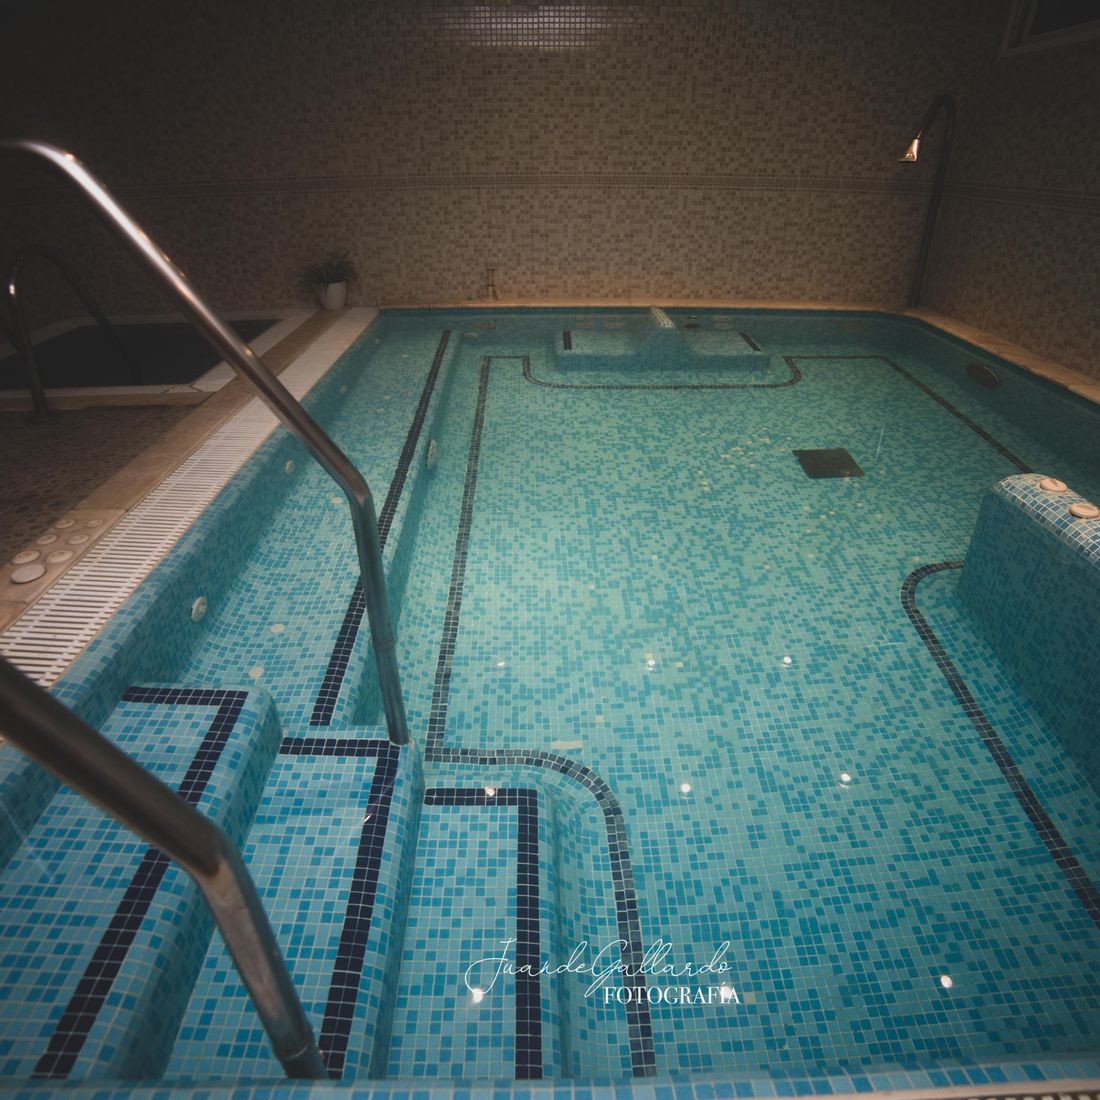 piscina climatizada